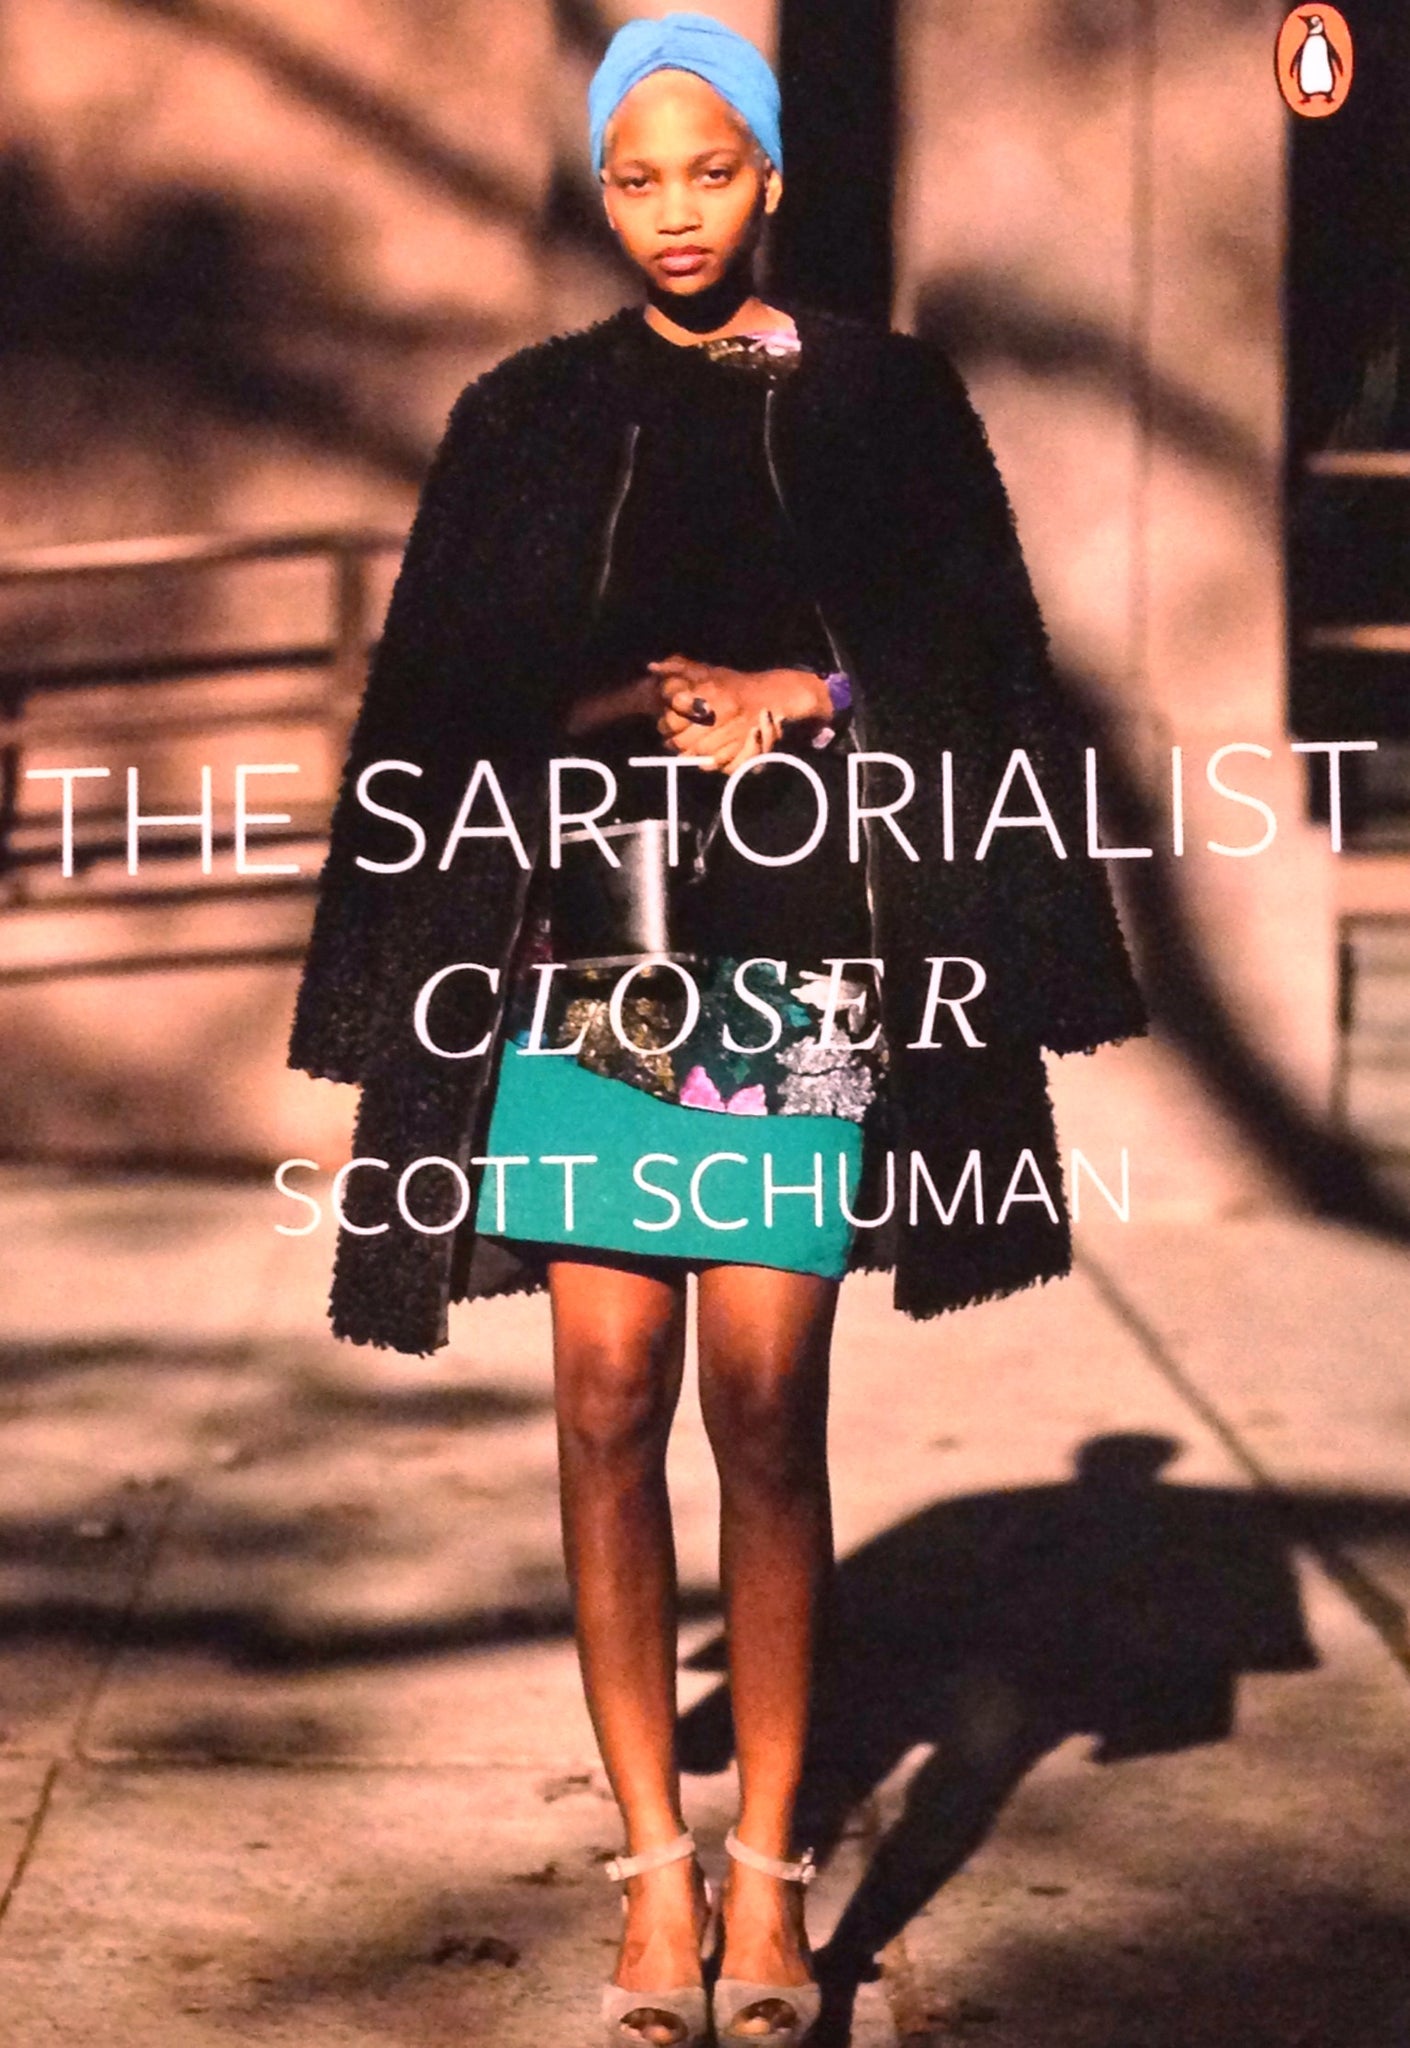 The Sartorialist - Closer - Scott Schuman